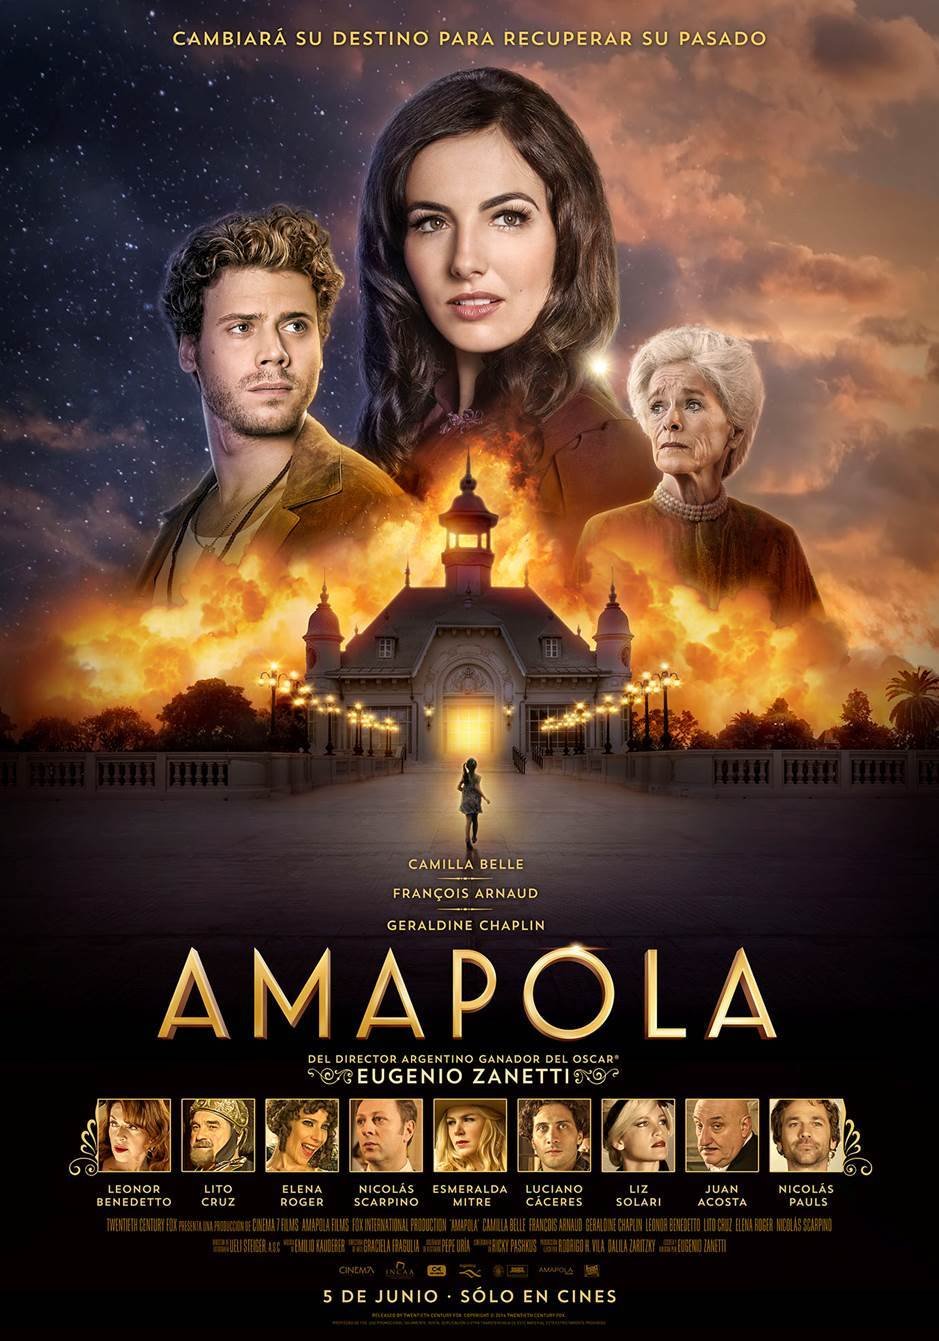 Amapola (2014) Screenshot 1 